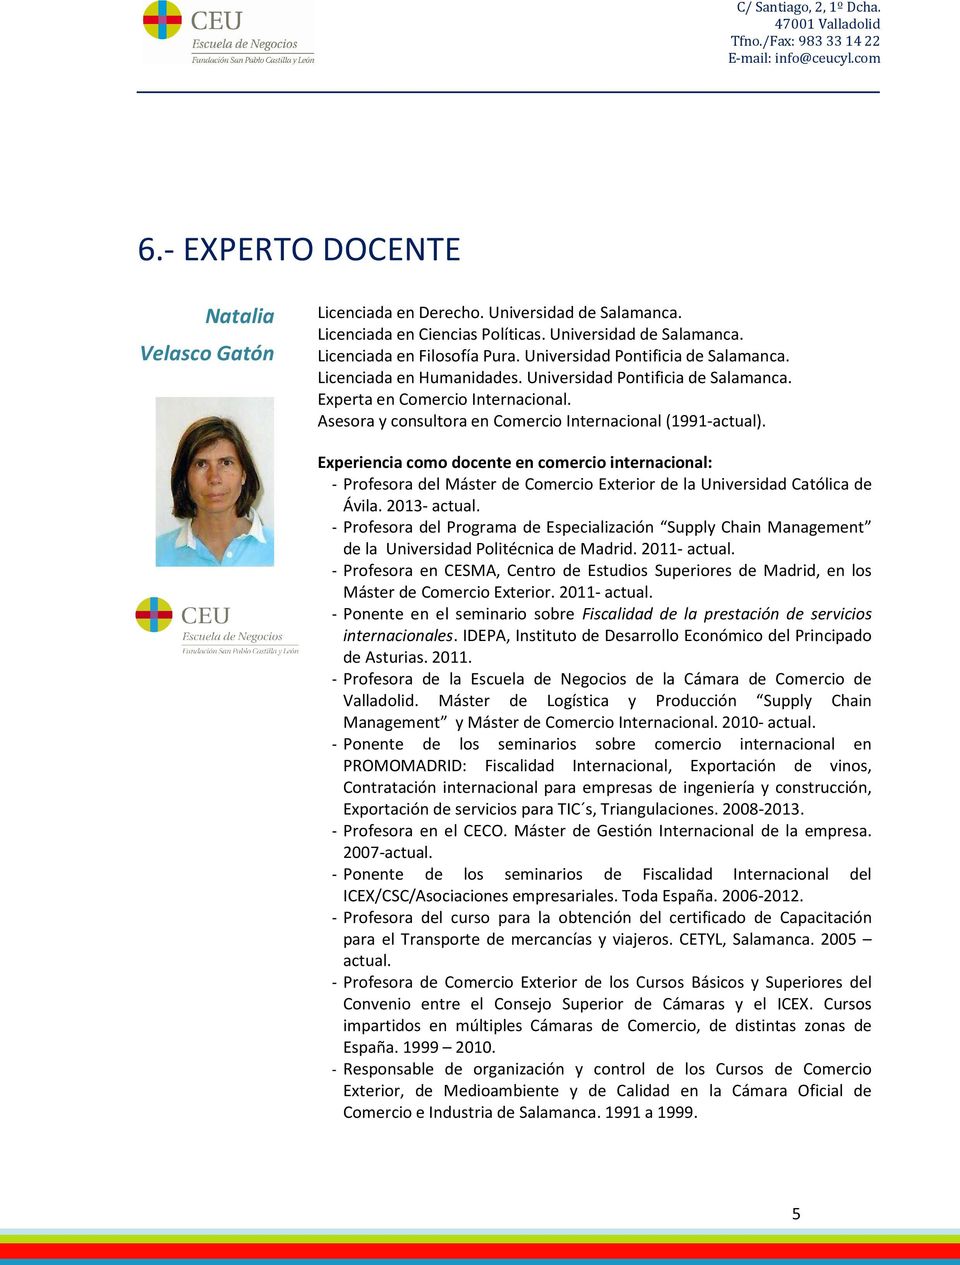 Experiencia como docente en comercio internacional: Profesora del Máster de Comercio Exterior de la Universidad Católica de Ávila. 2013 actual.